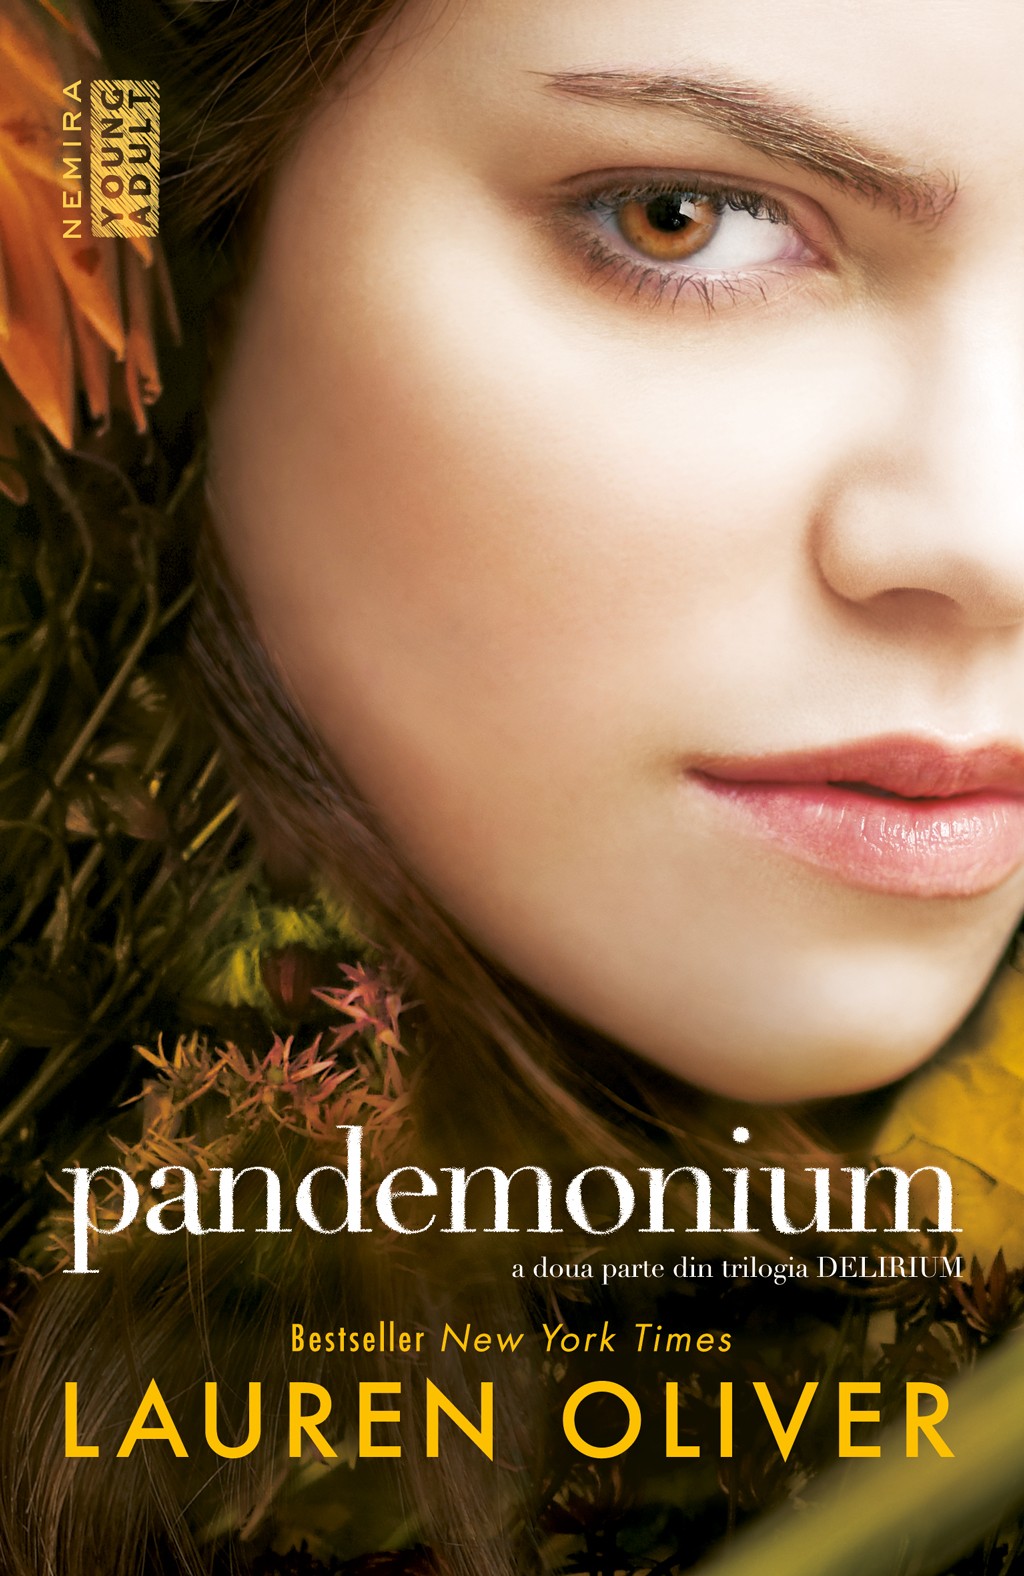 eBook Delirium: Pandemonium - Lauren Oliver